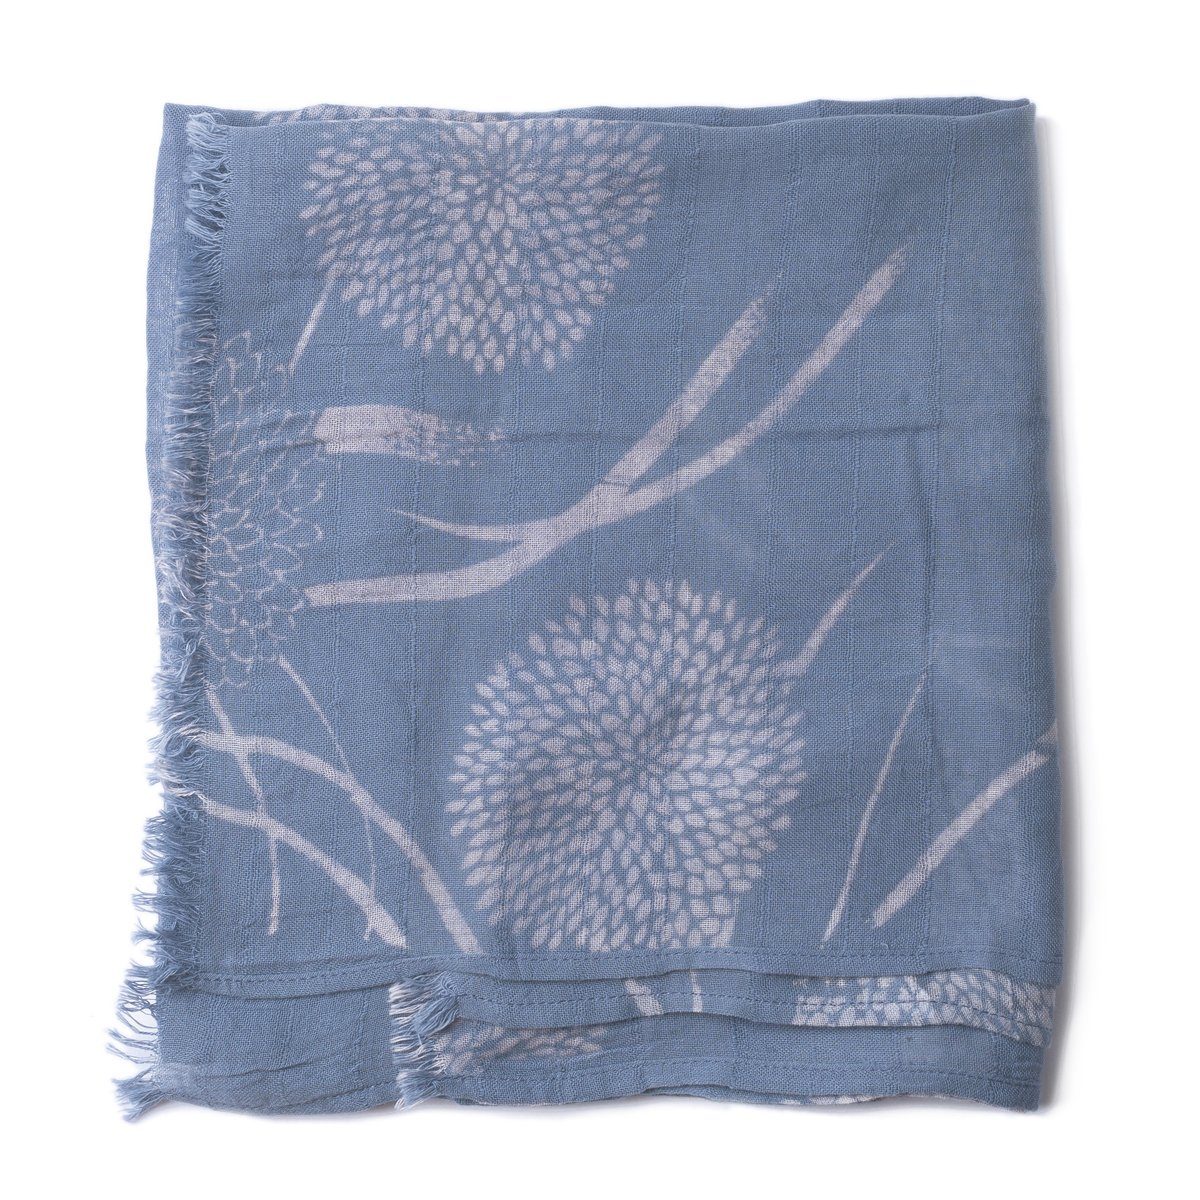 PANASIAM Halstuch elegantes Schaltuch auch als Schultertuch Schal oder Stola tragbar, in schönen farbigen Designs mit kleinen Fransen aus Baumwolle blau chrysantheme